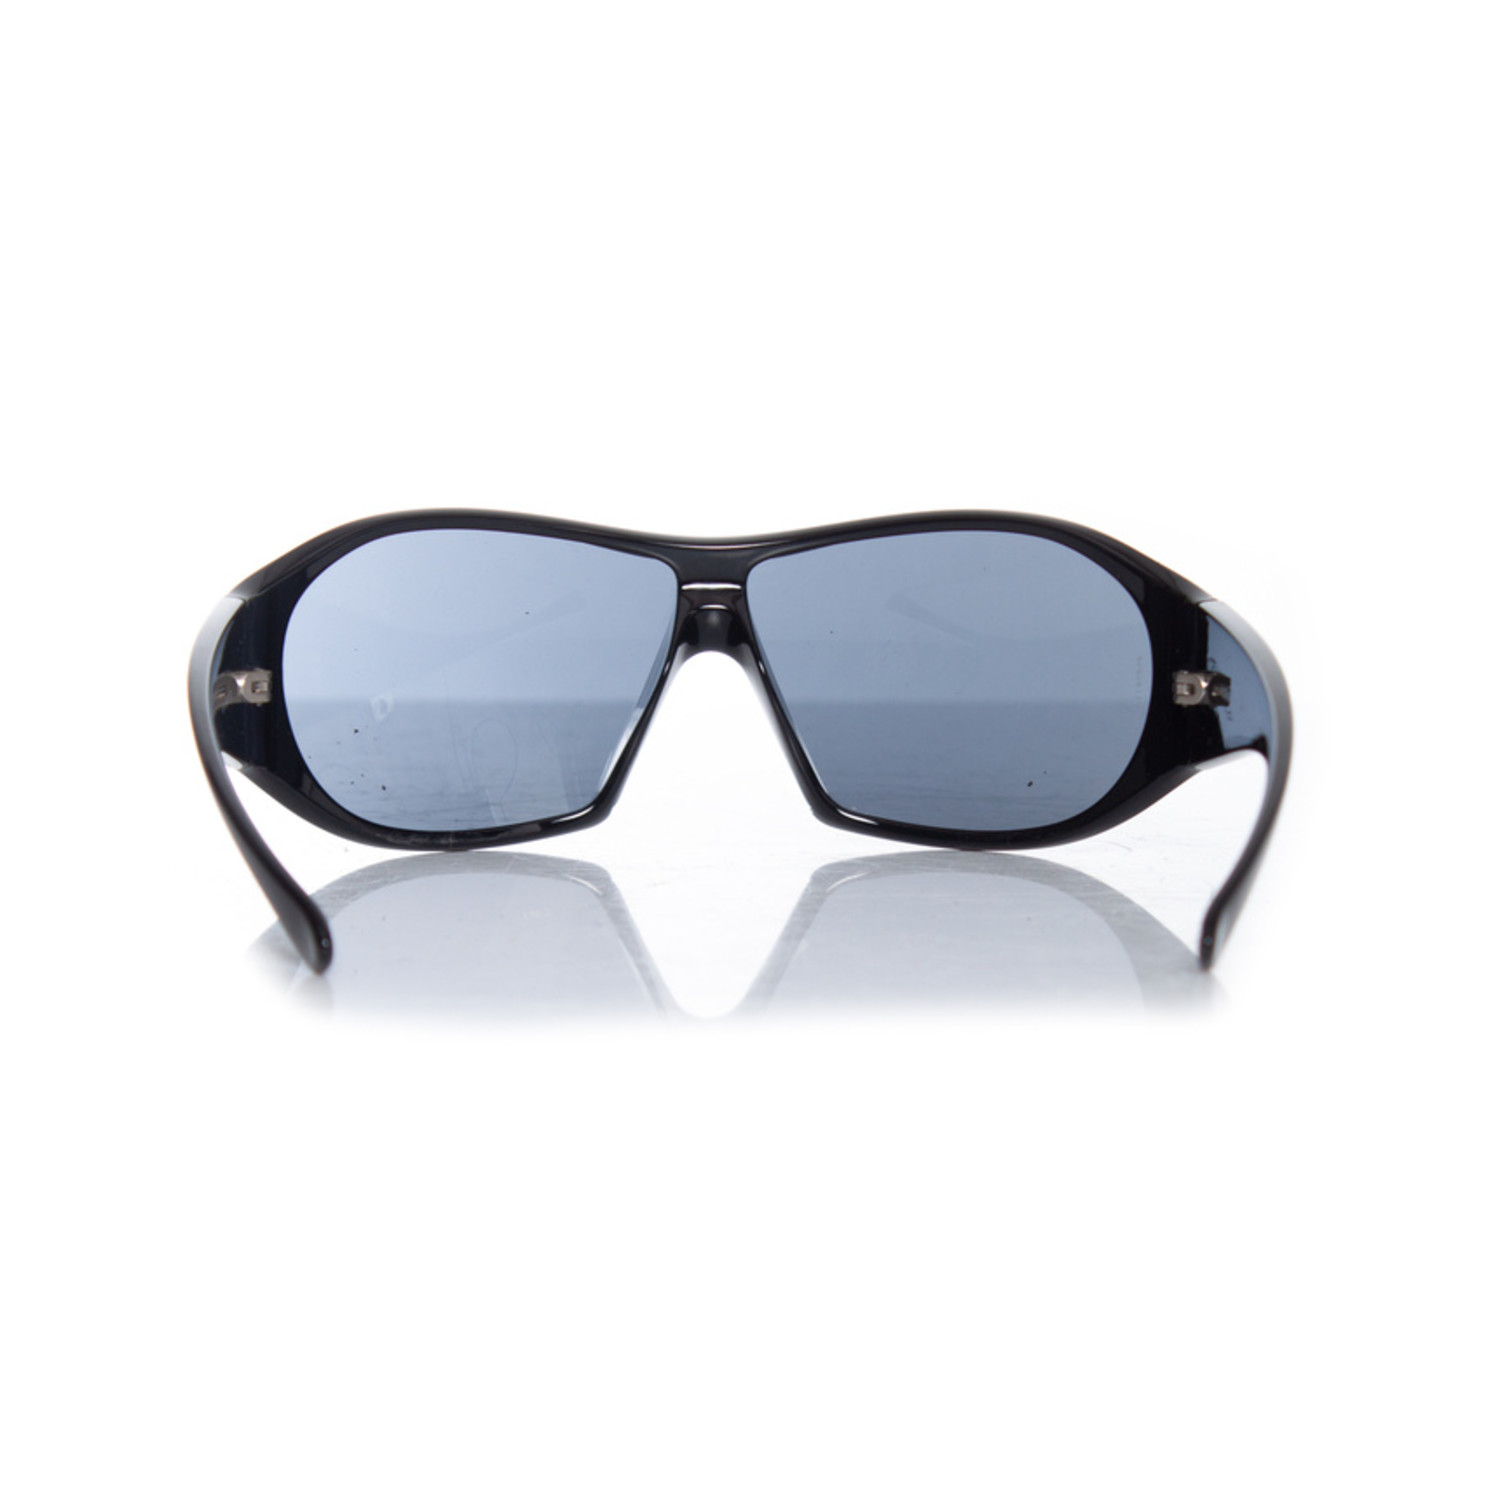 Chanel Black Sunglasses for Women